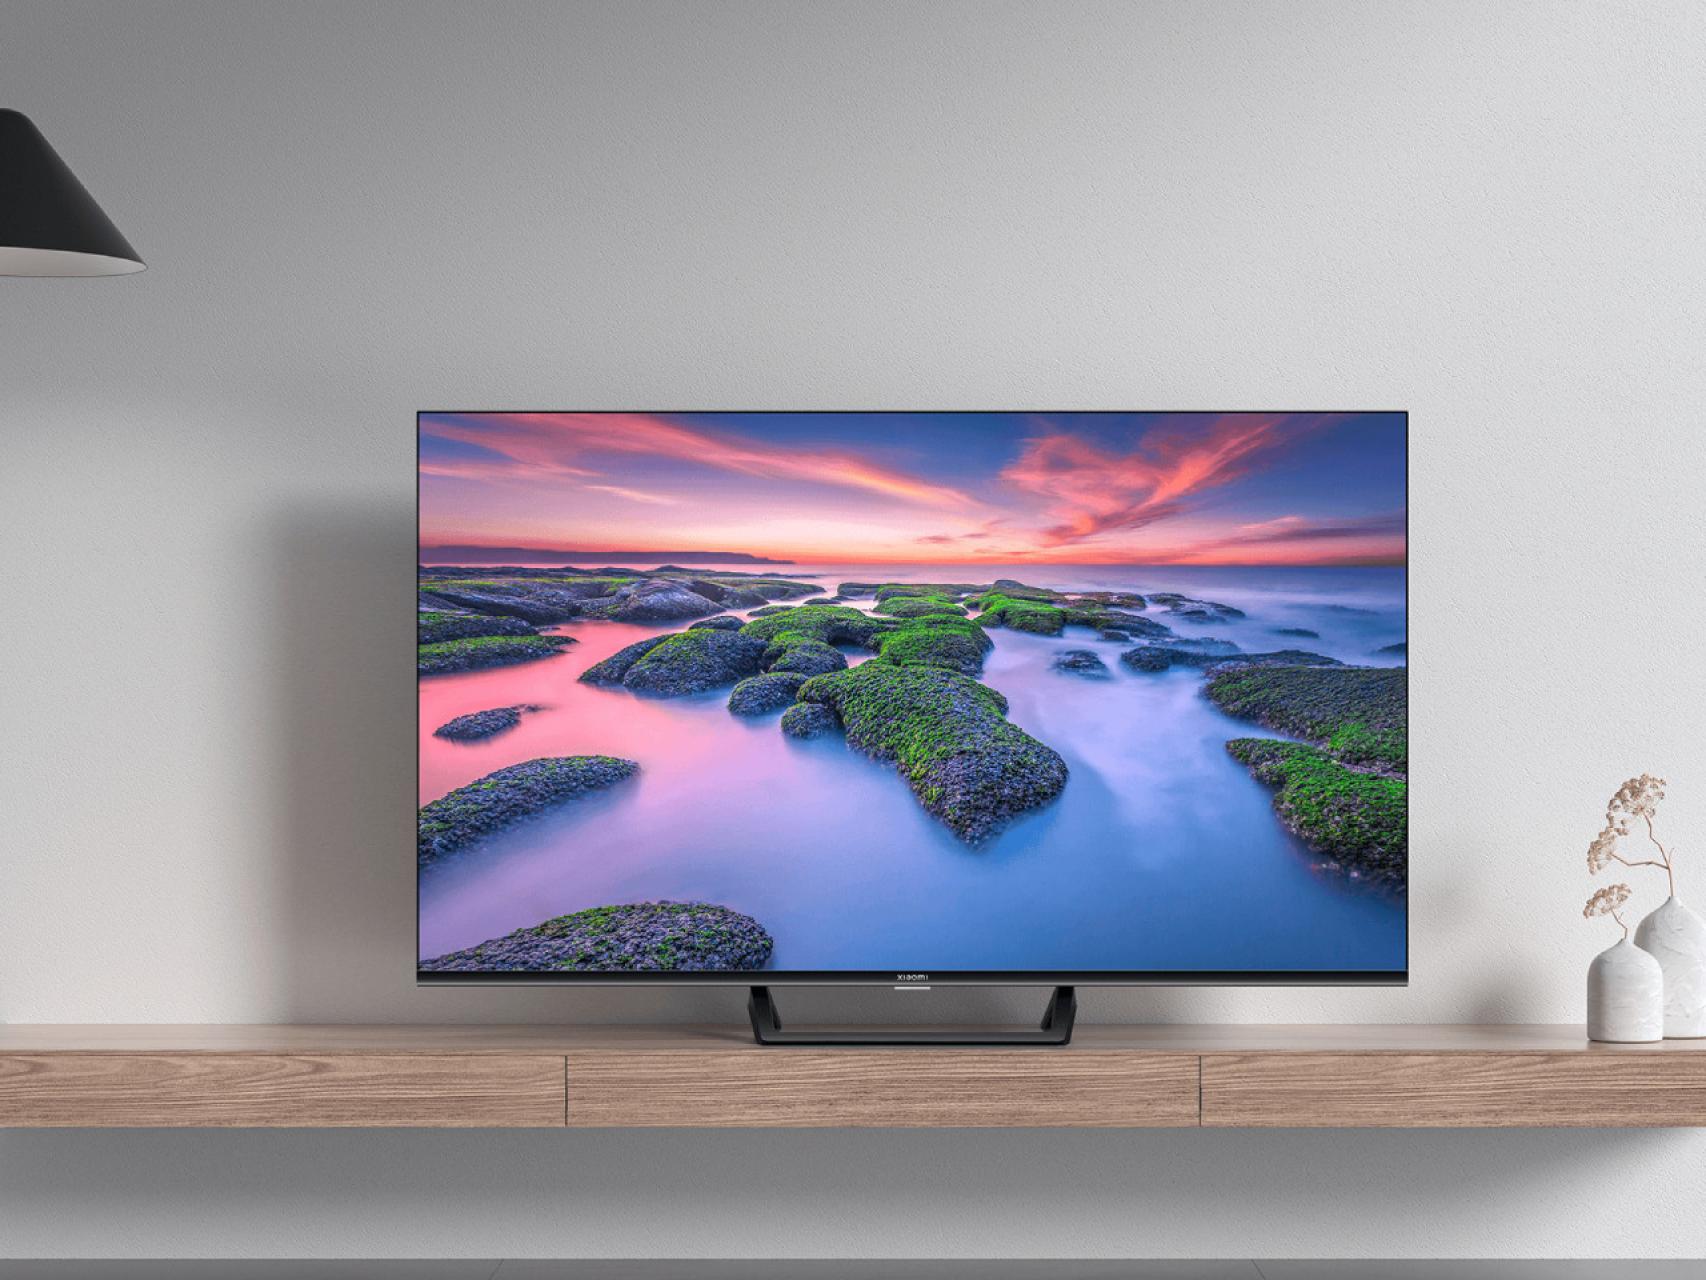 Comprar un televisor barato de Xiaomi: todo lo qué debes tener en cuenta